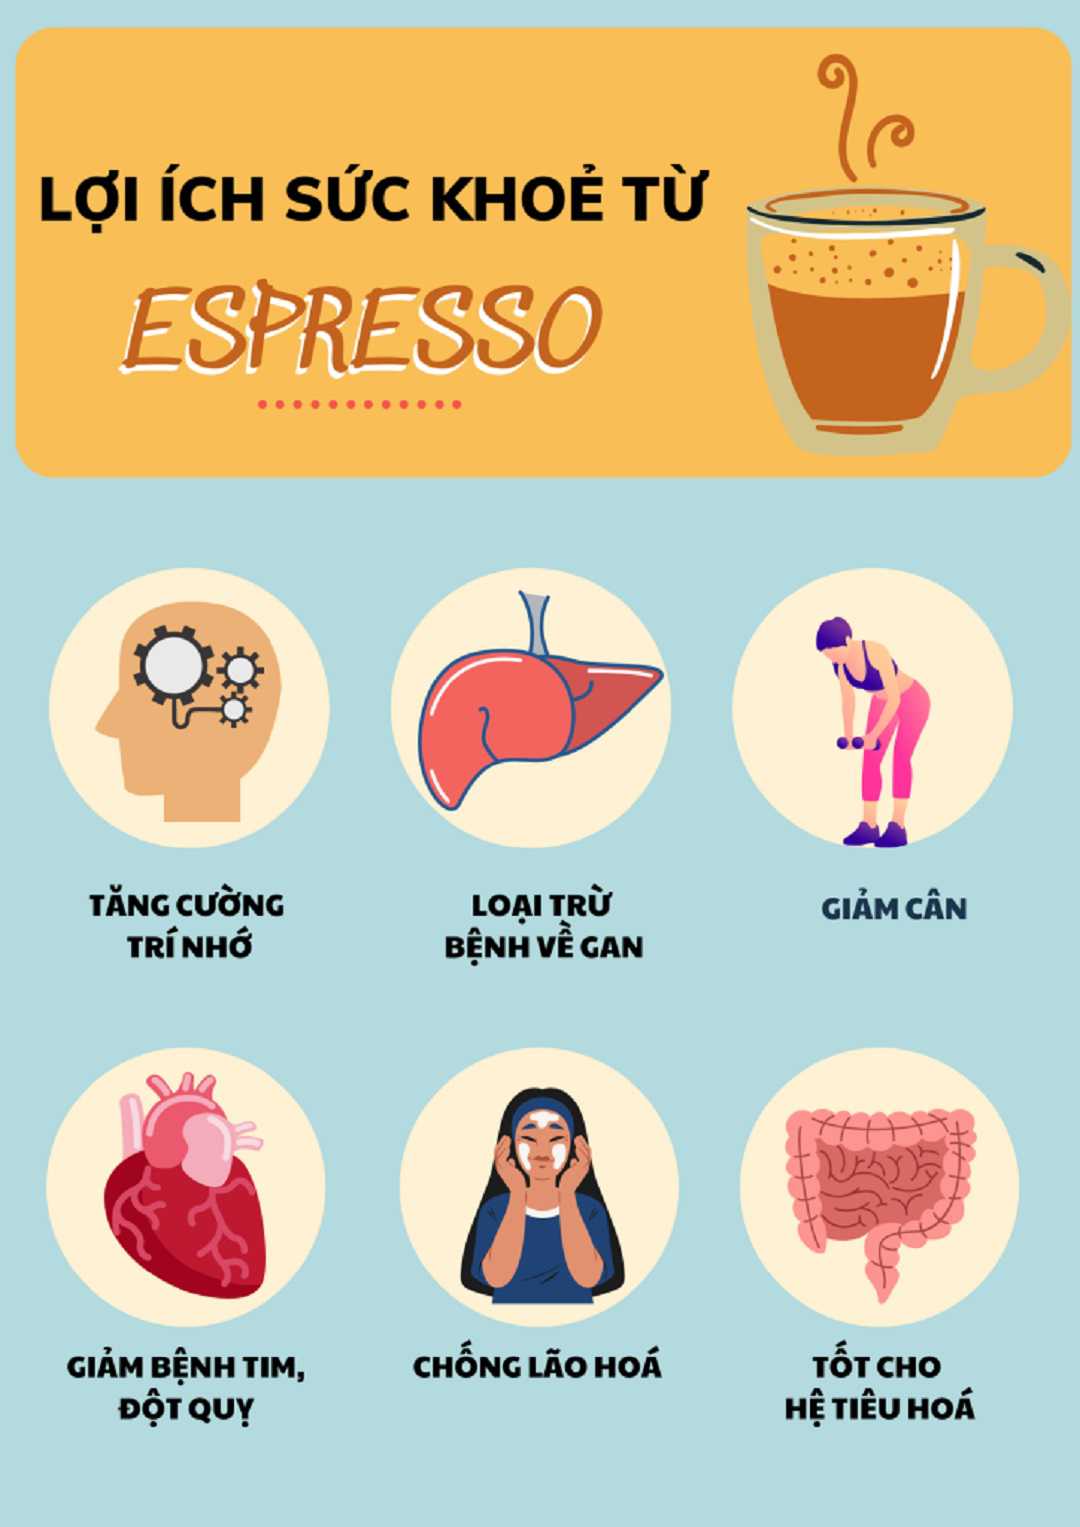 Espresso tốt cho sức khoẻ - Liệu có đúng hay sai?